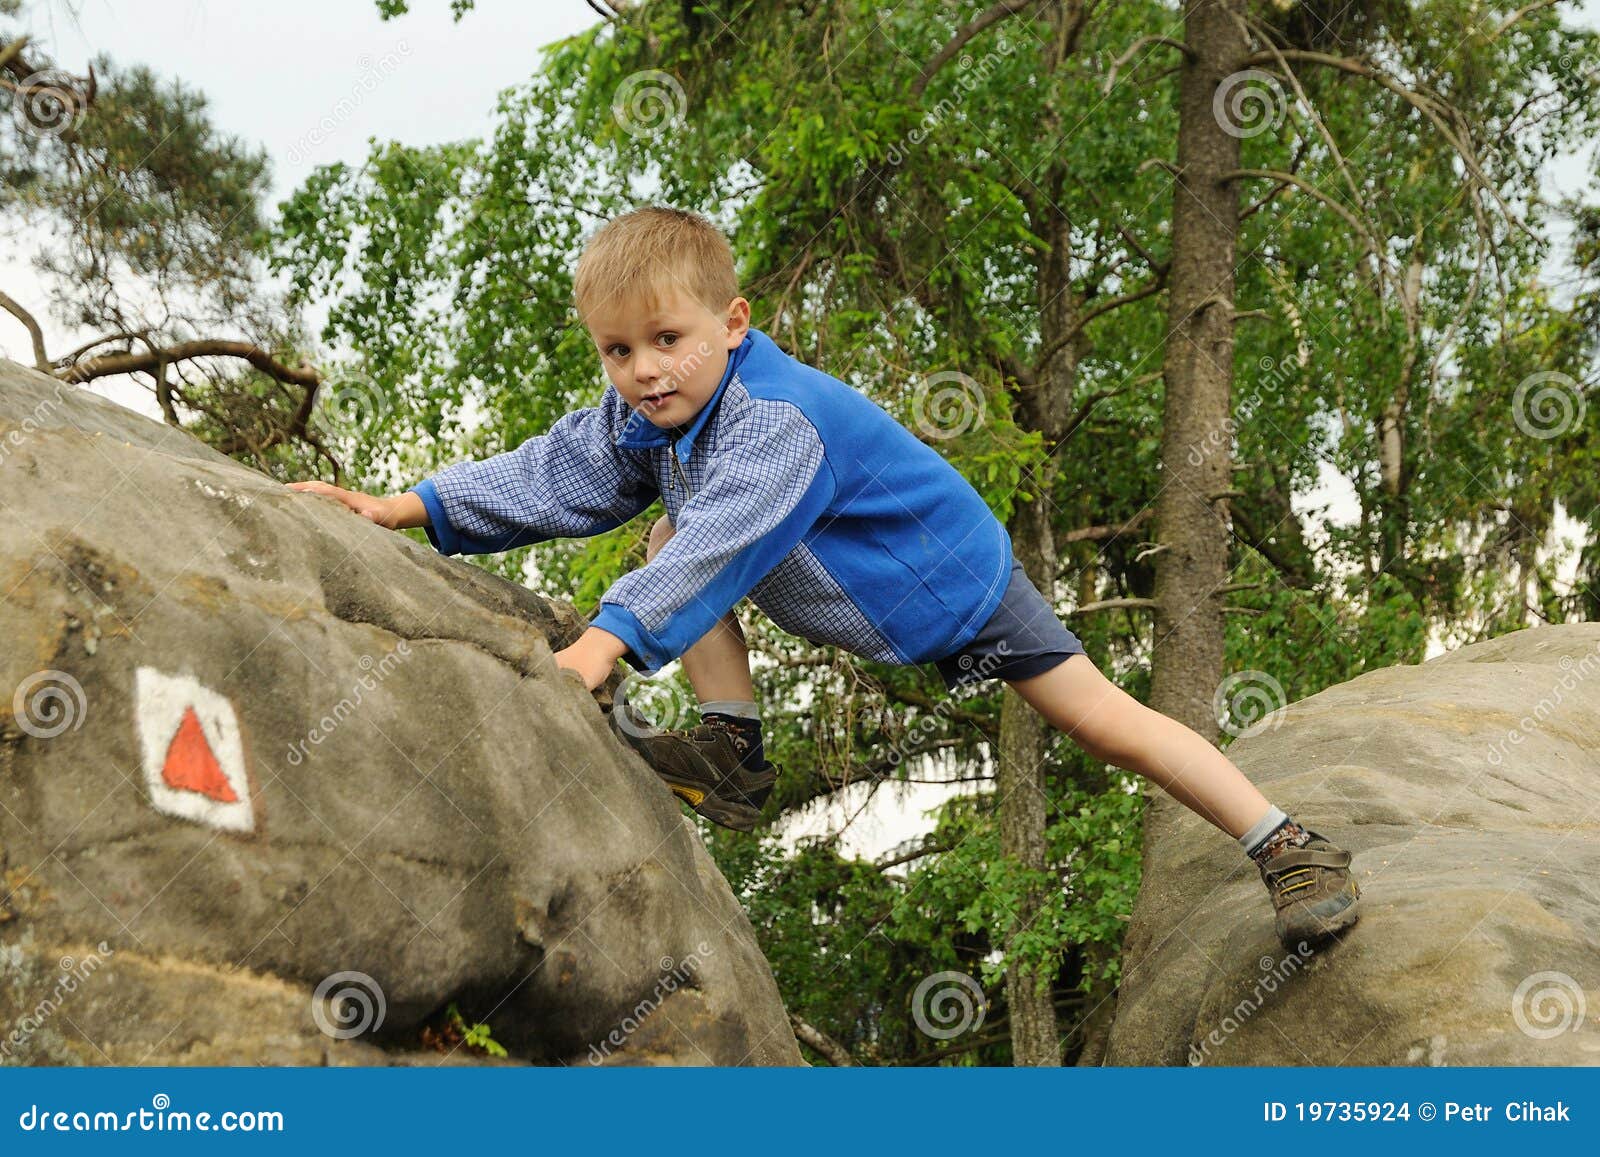 child climbing rock